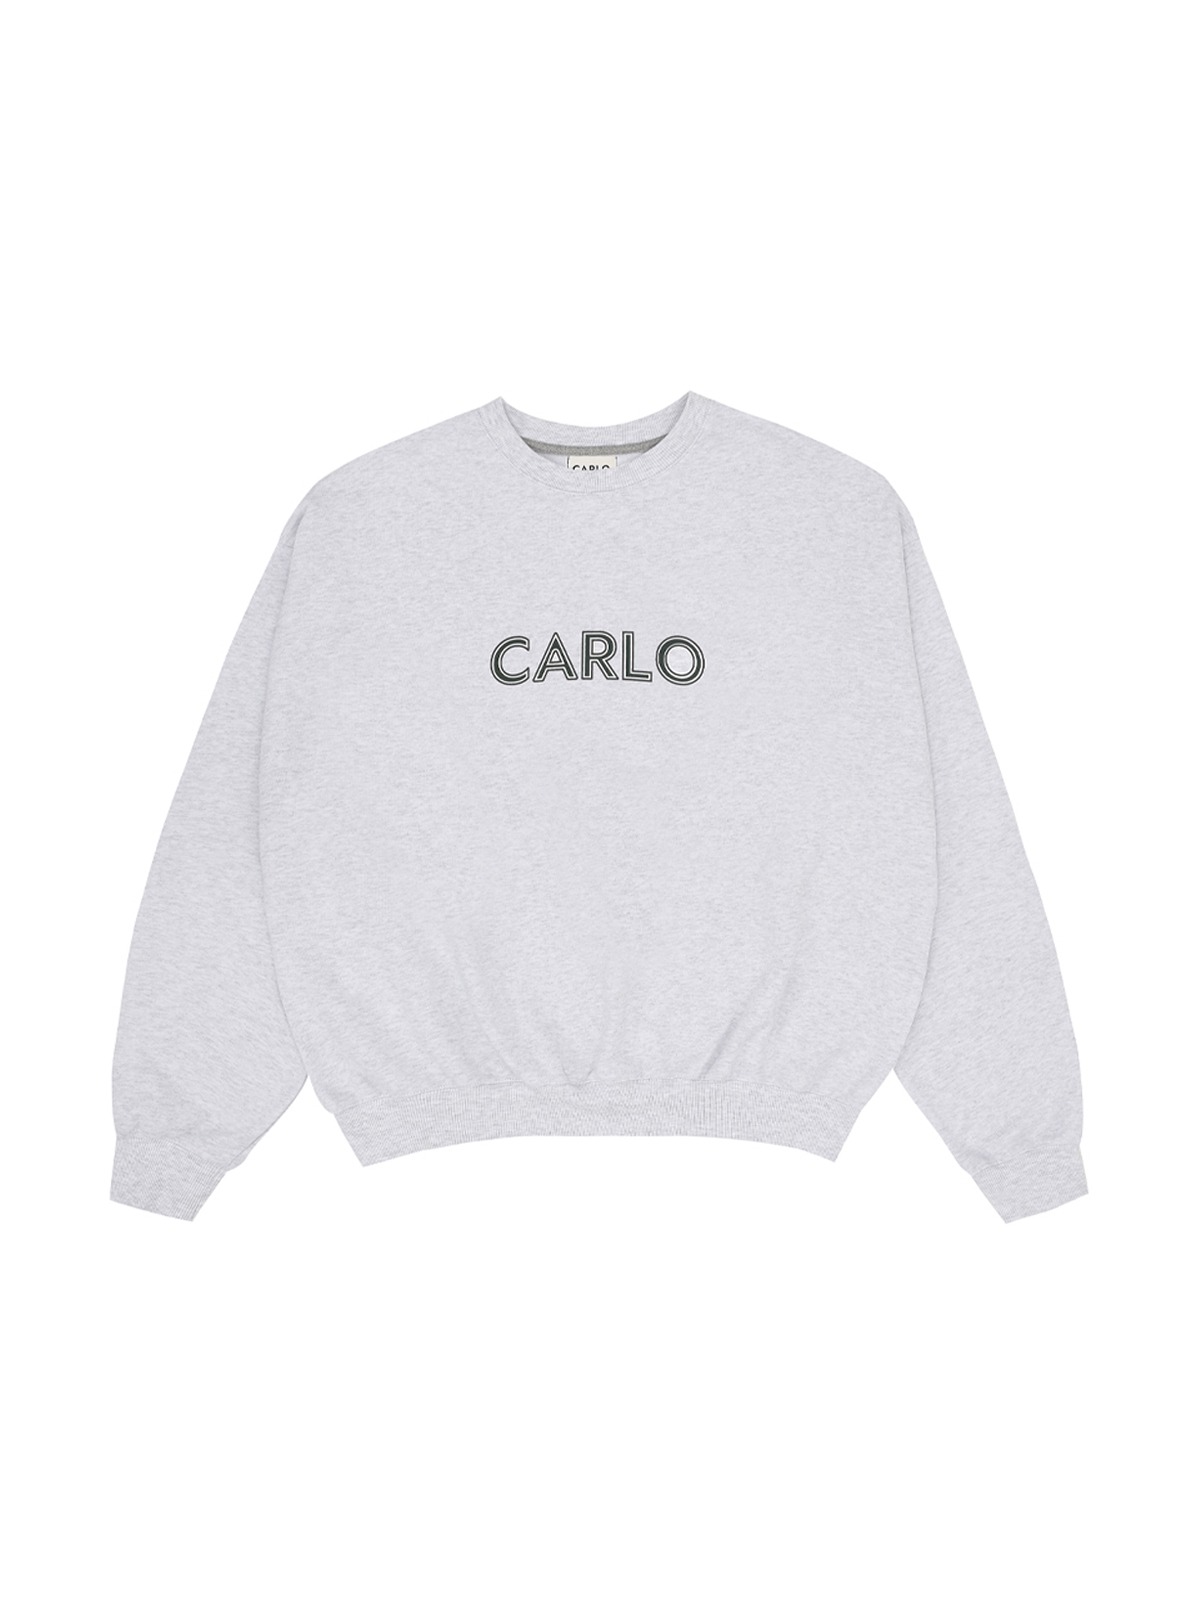 CARLO Sweatshirts Grey